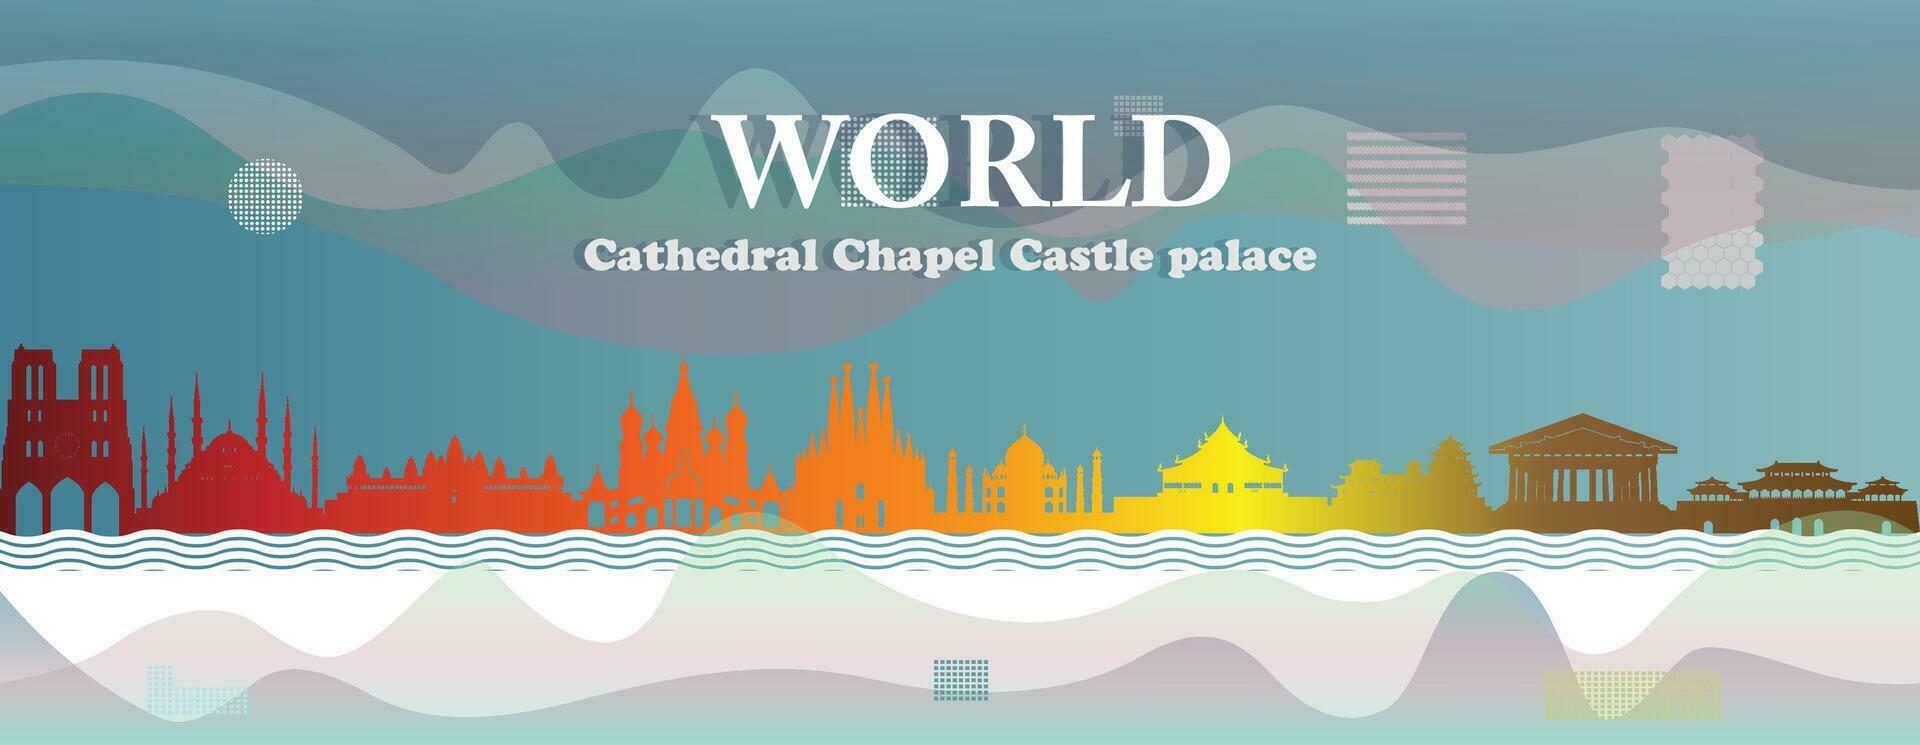 o negócio folheto moderno Projeto turismo, catedral, capela, castelo, Palácio. vetor